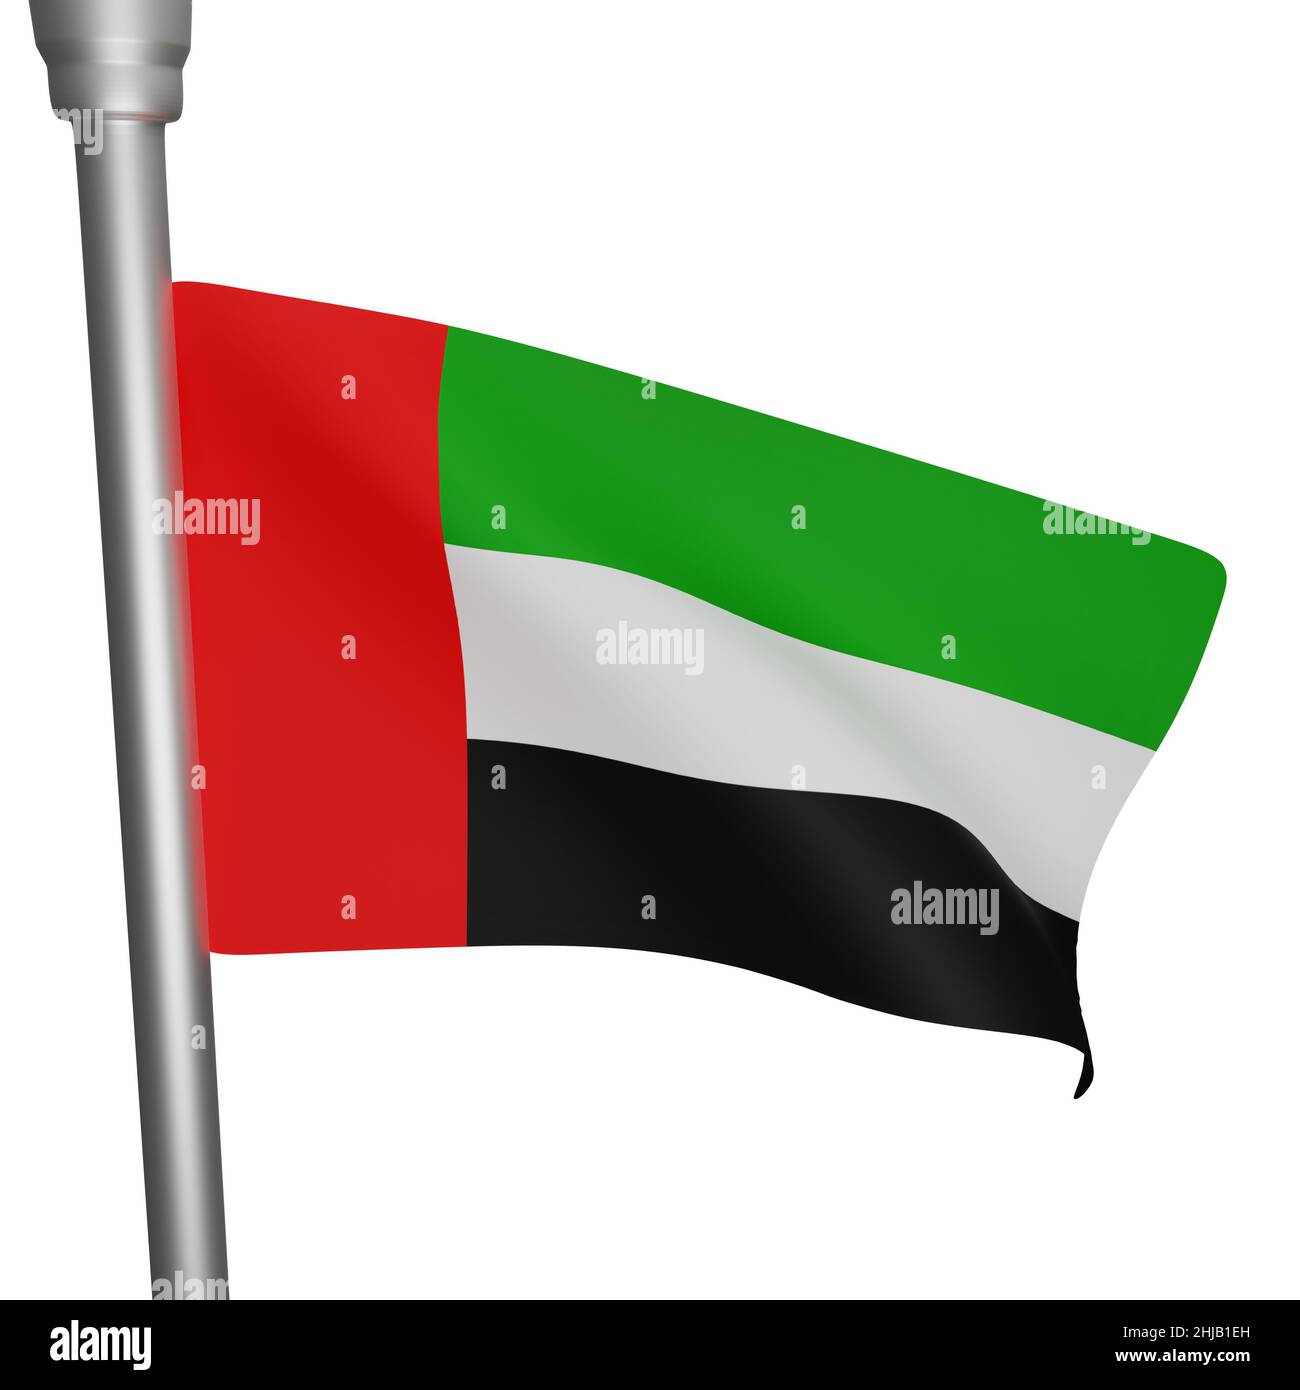 Cờ UAE với những sắc đỏ, xanh và trắng biểu trưng cho sự giàu có và sự kiêu hãnh của quốc gia này. Đây là lá cờ đặc trưng của UAE và được sử dụng trong nhiều lĩnh vực khác nhau như thể thao, thương mại hay chính trị. Hãy xem những hình ảnh liên quan để hiểu thêm về nền văn hoá và tôn giáo của UAE.